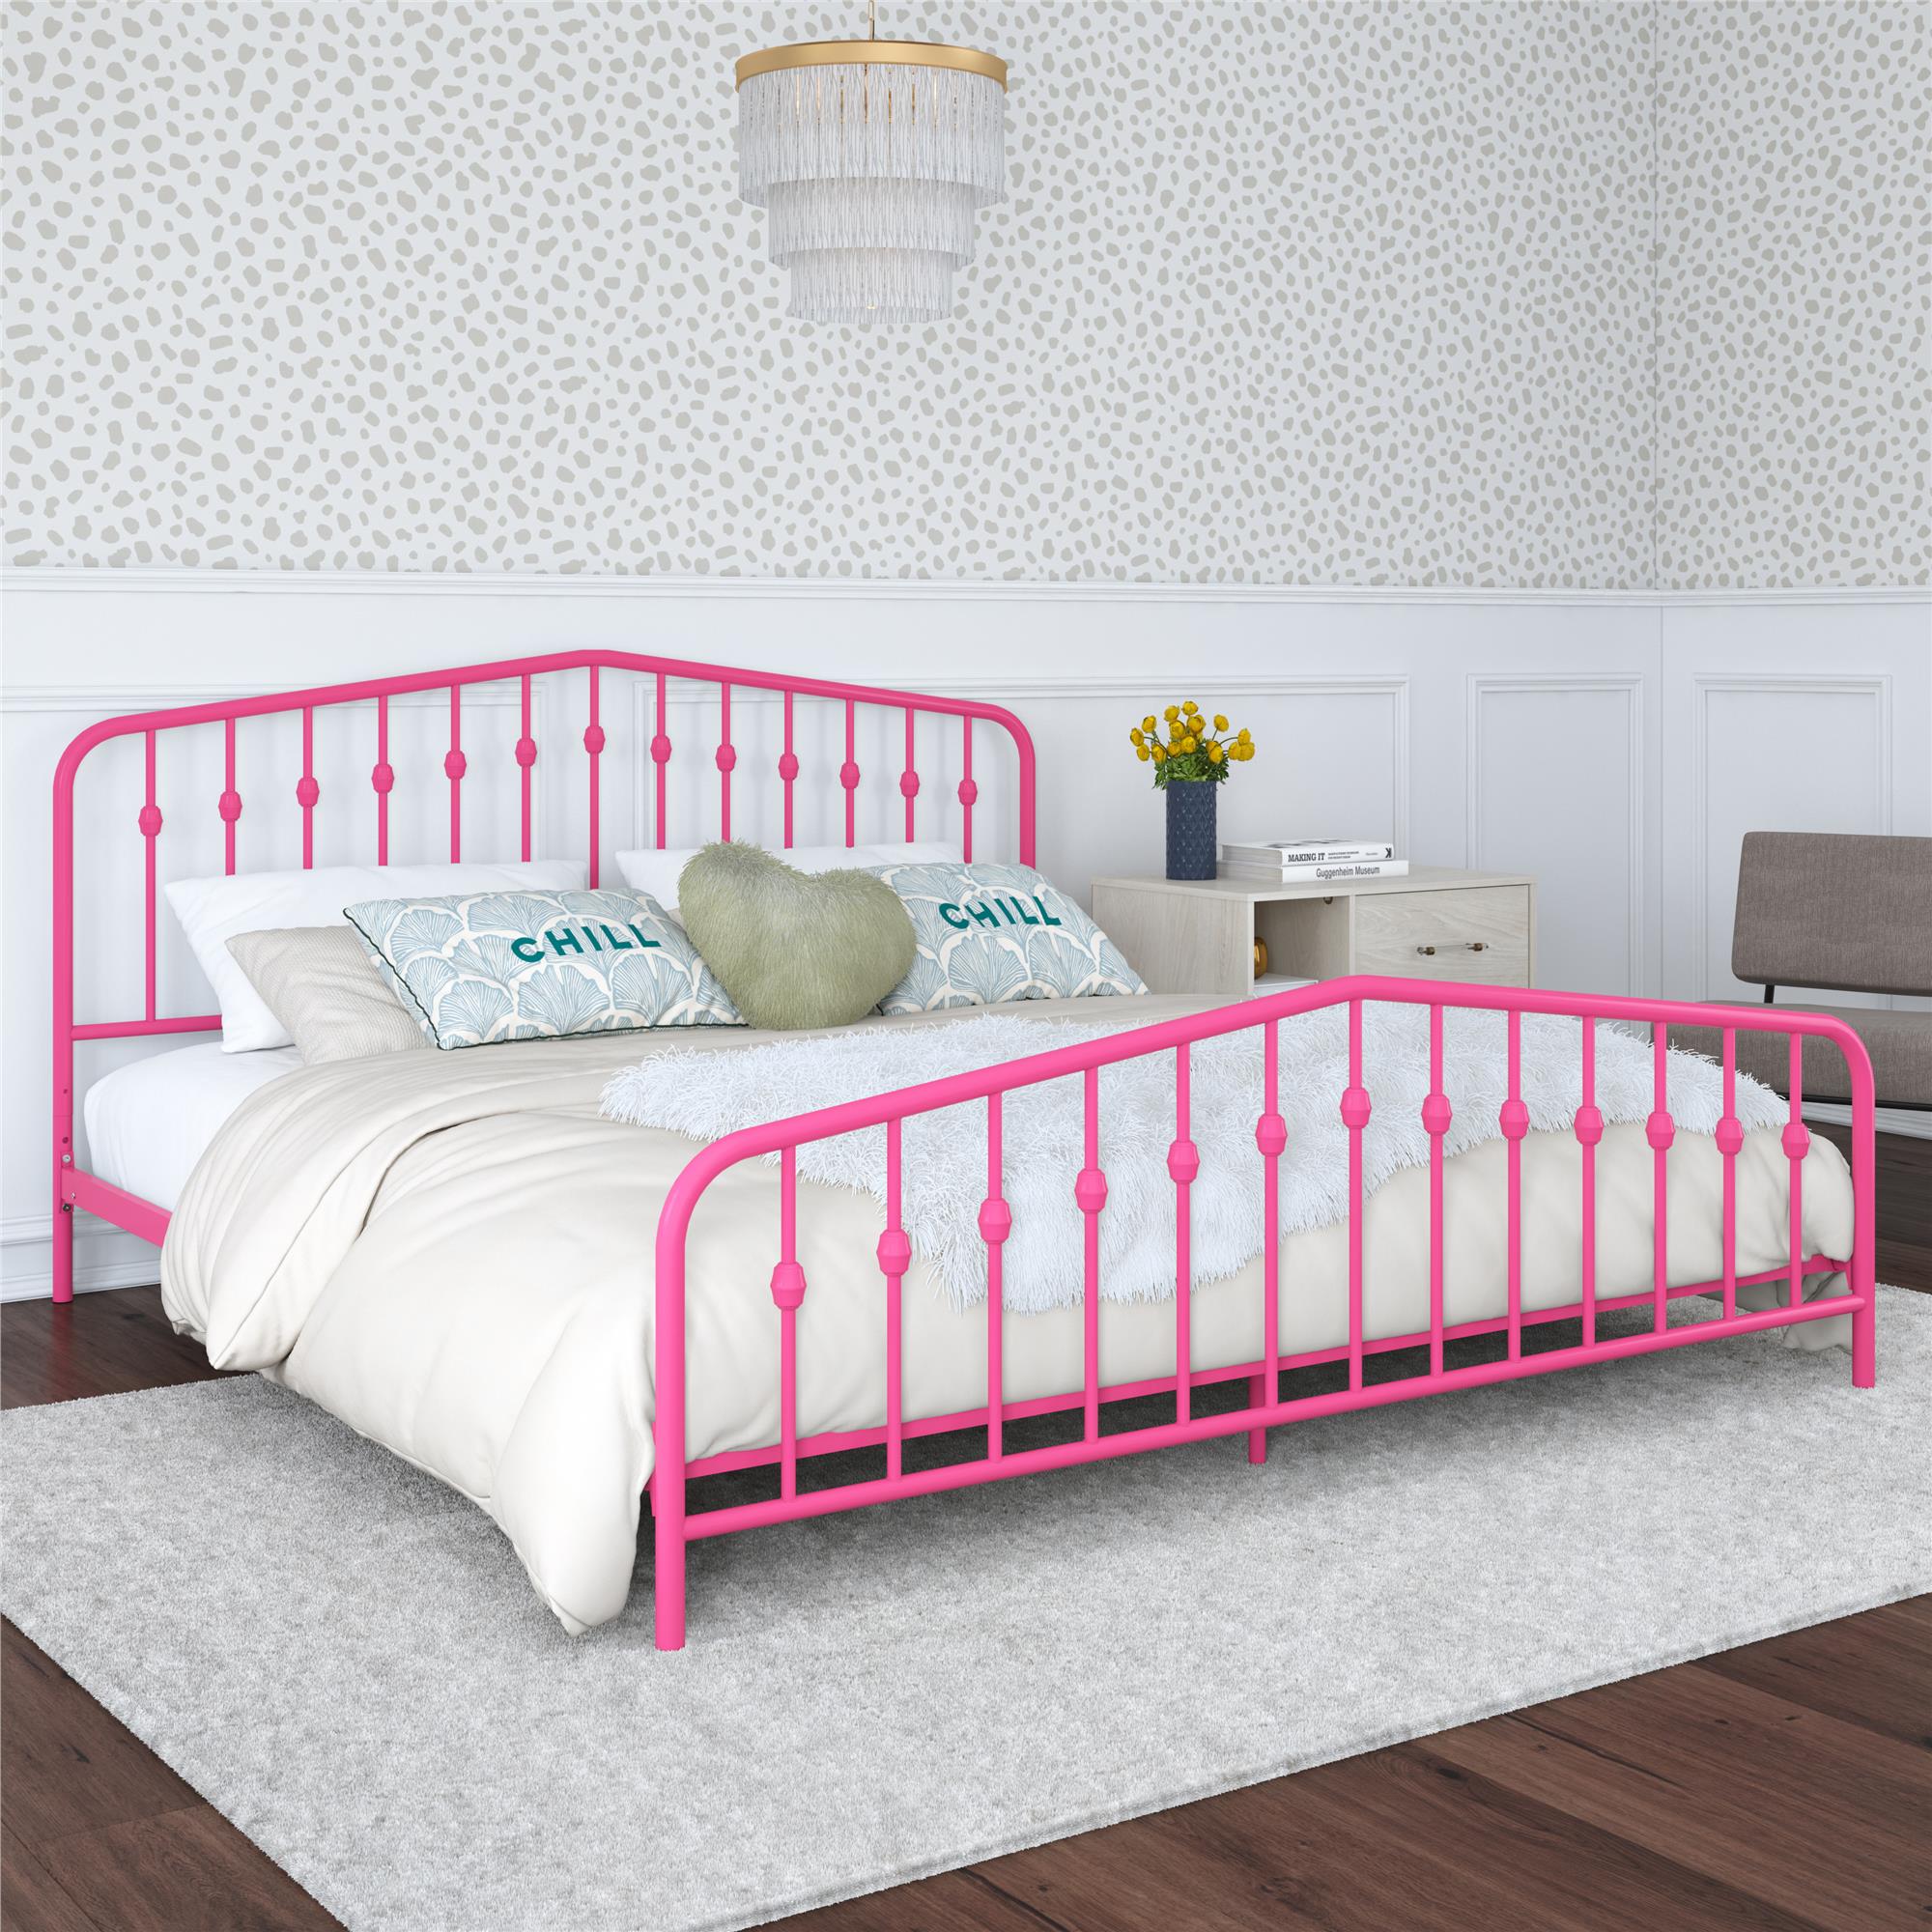 Novogratz Bushwick Metal Platform Bed Frame with Headboard, King, Hot Pink - image 1 of 26